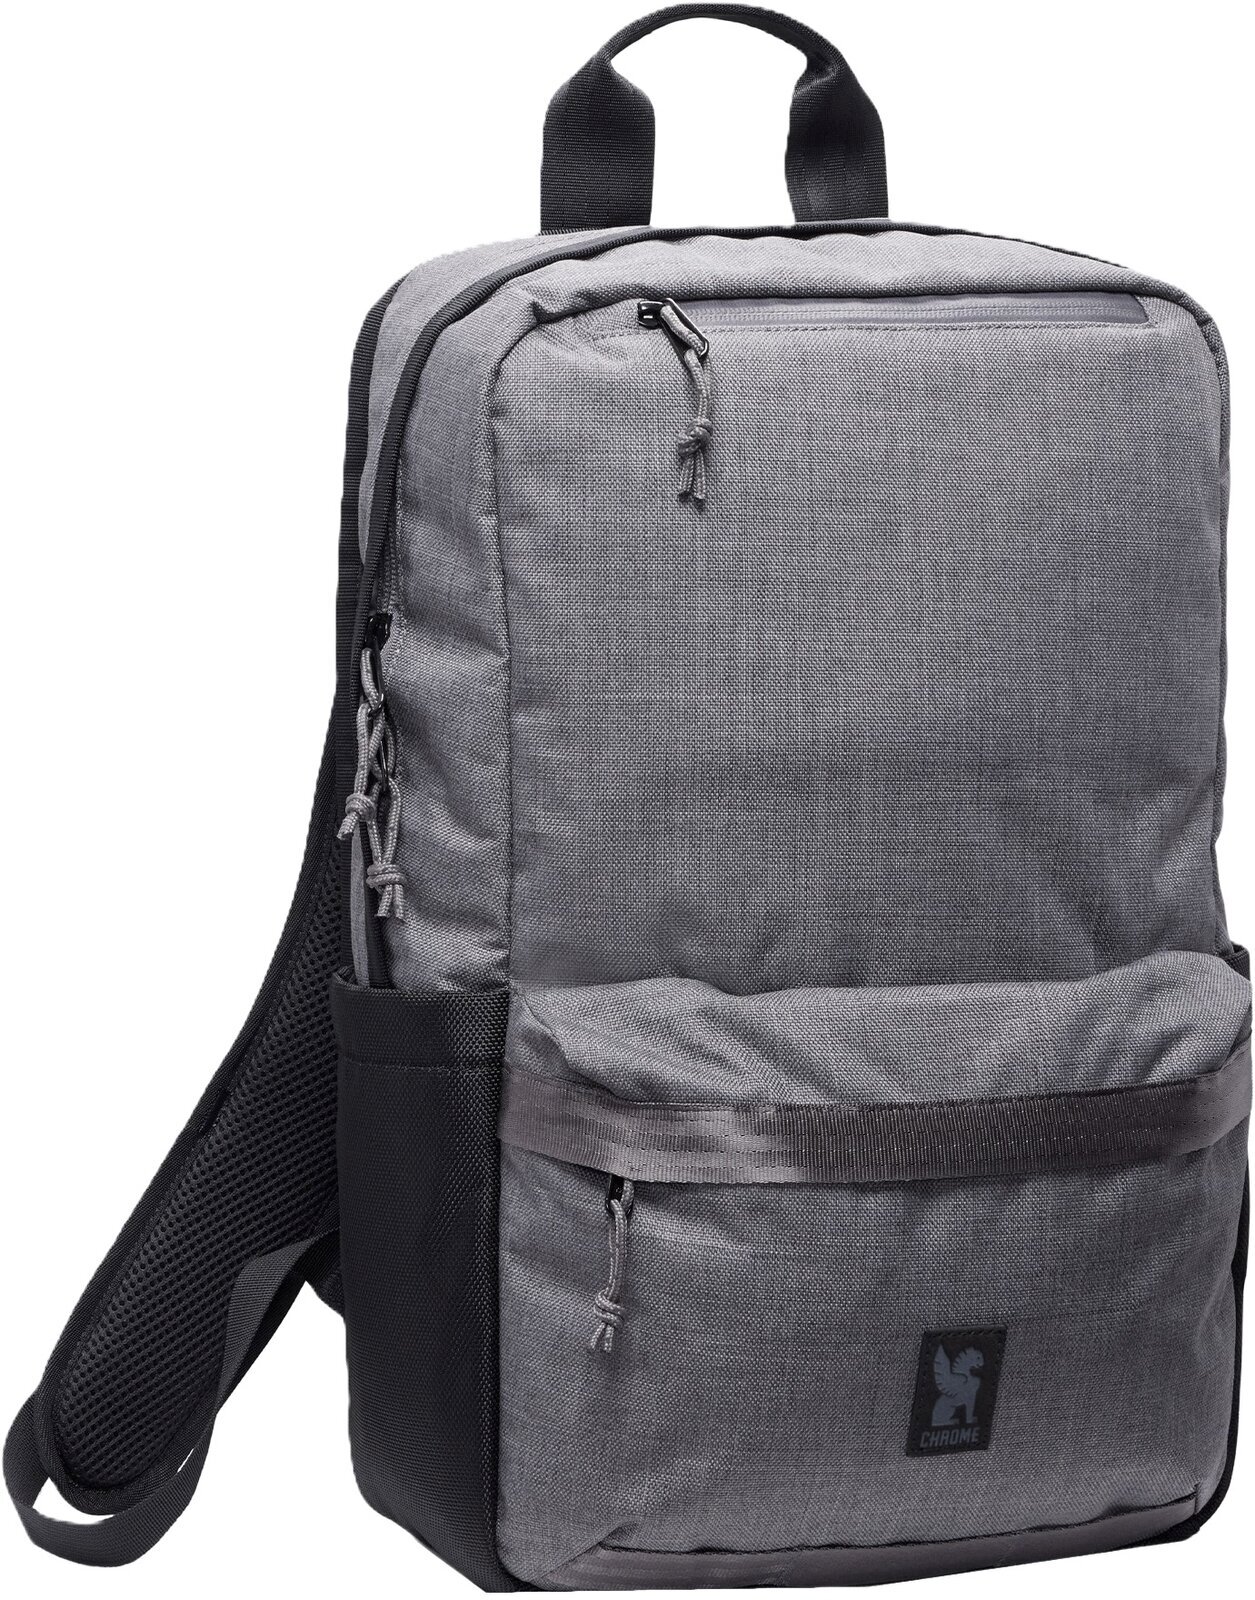 Livsstil rygsæk / taske Chrome Hondo Backpack Castlerock Twill 18 L Rygsæk